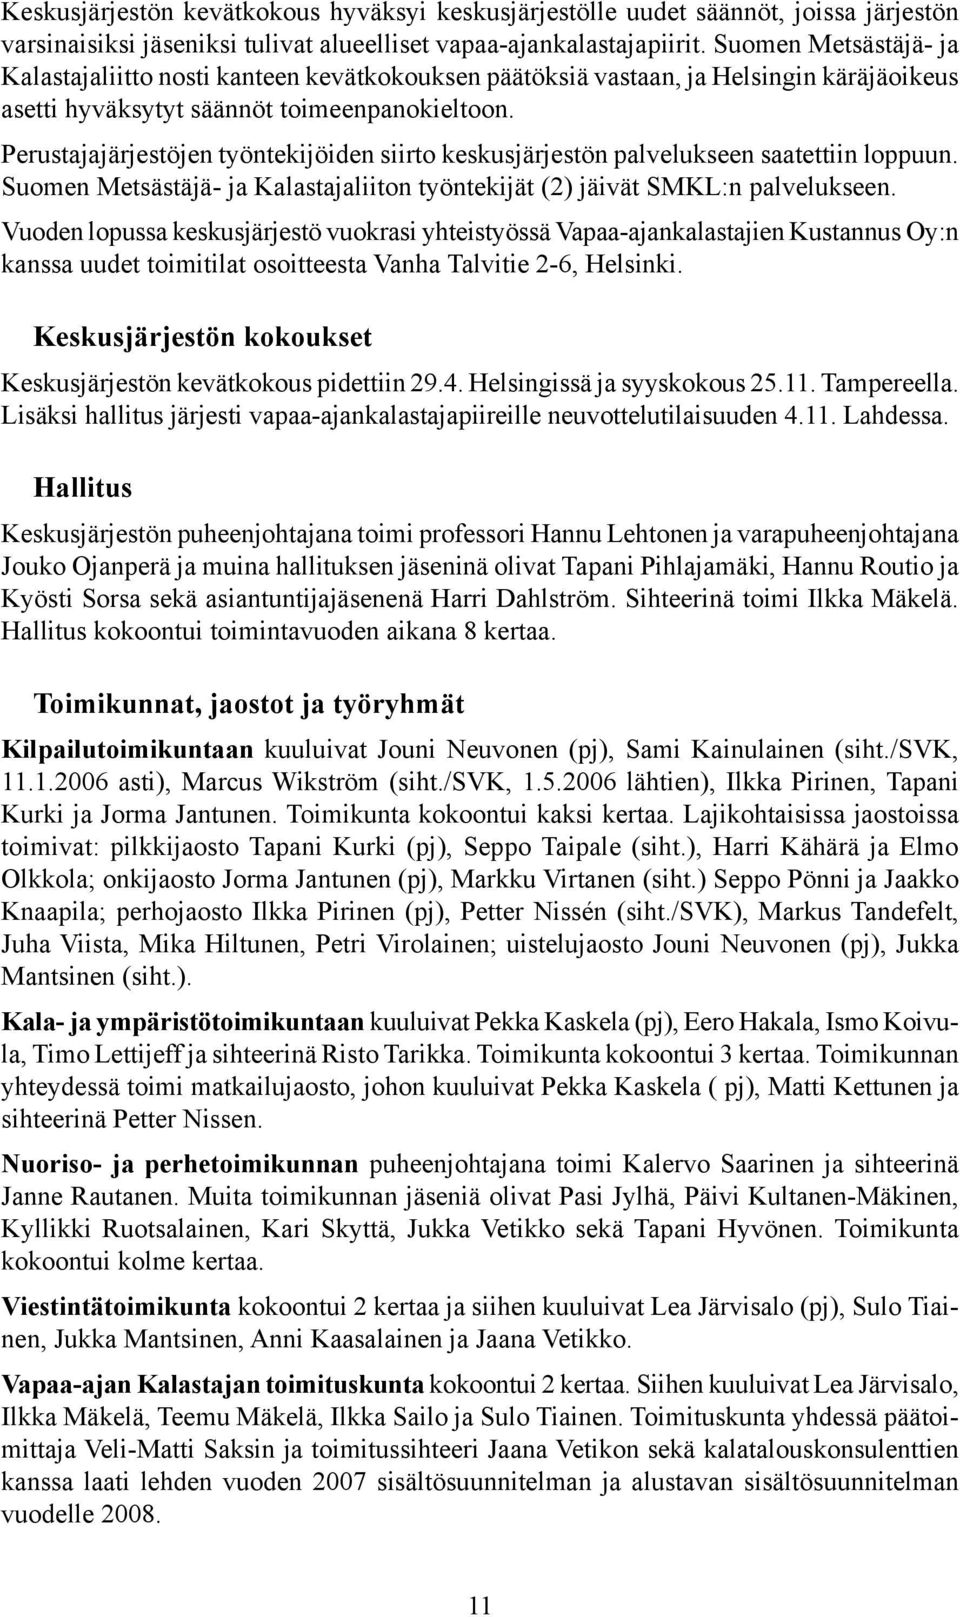 Perustajajärjestöjen työntekijöiden siirto keskusjärjestön palvelukseen saatettiin loppuun. Suomen Metsästäjä- ja Kalastajaliiton työntekijät (2) jäivät SMKL:n palvelukseen.